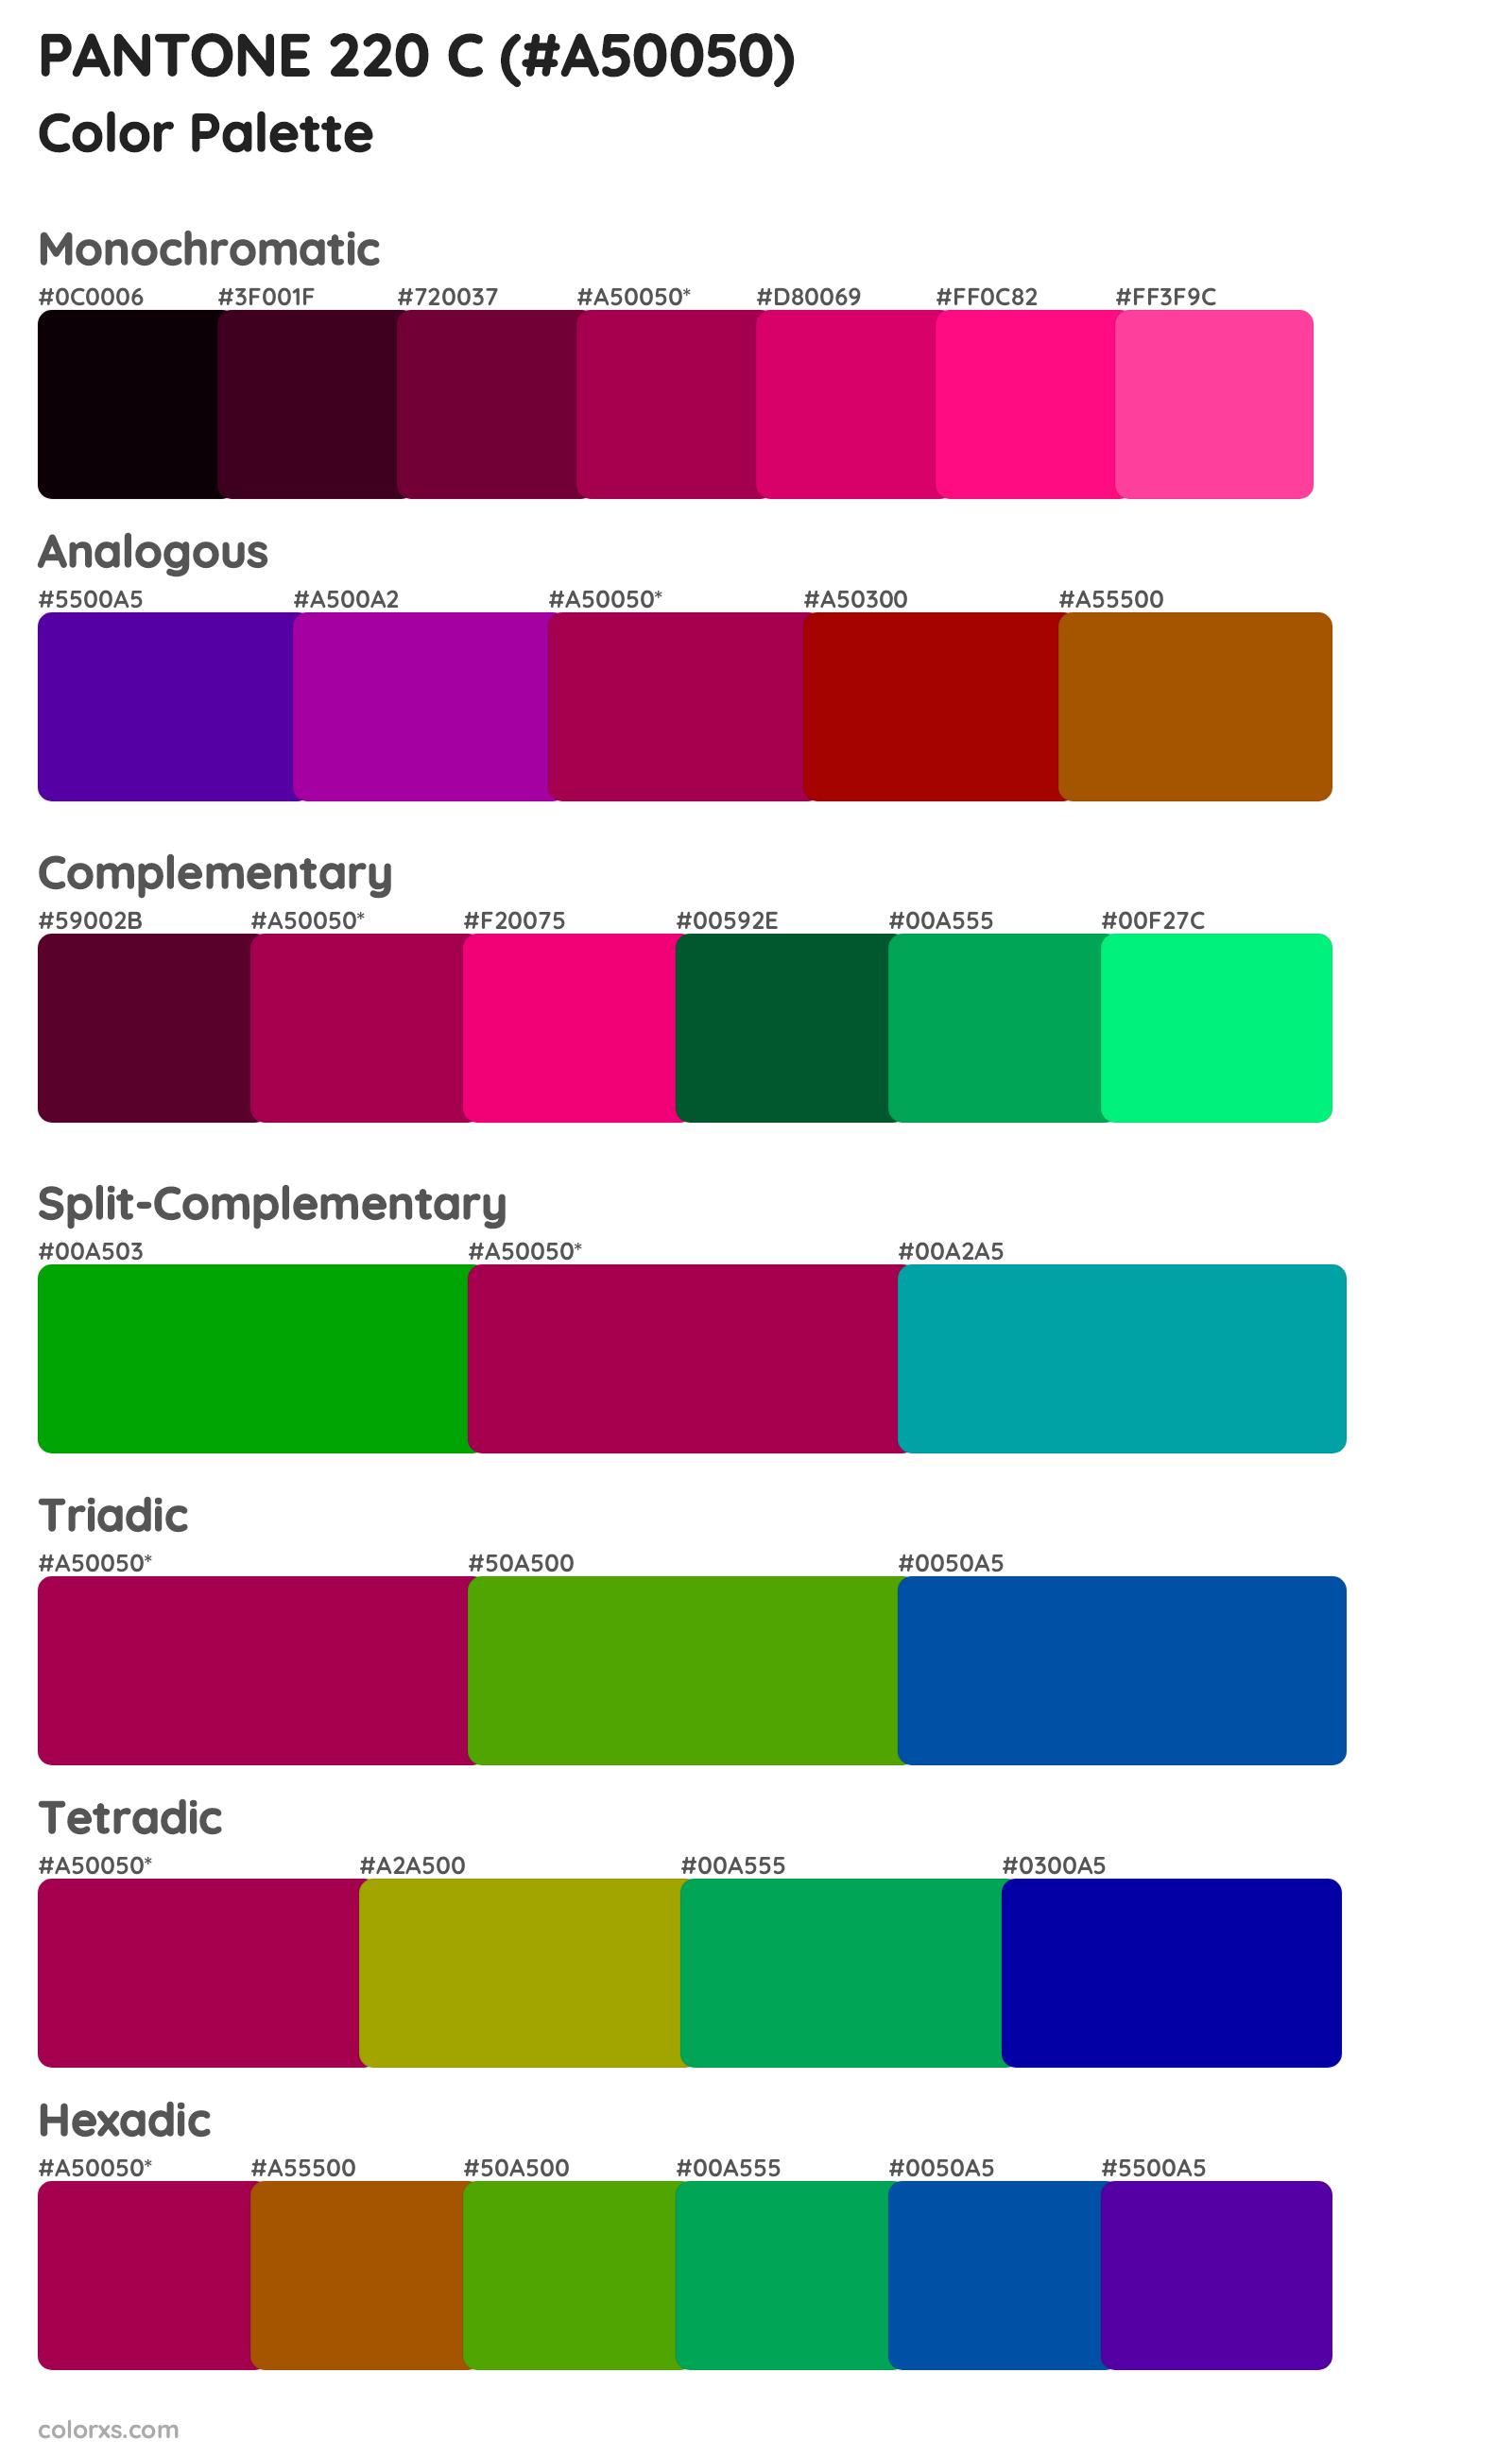 PANTONE 220 C Color Scheme Palettes